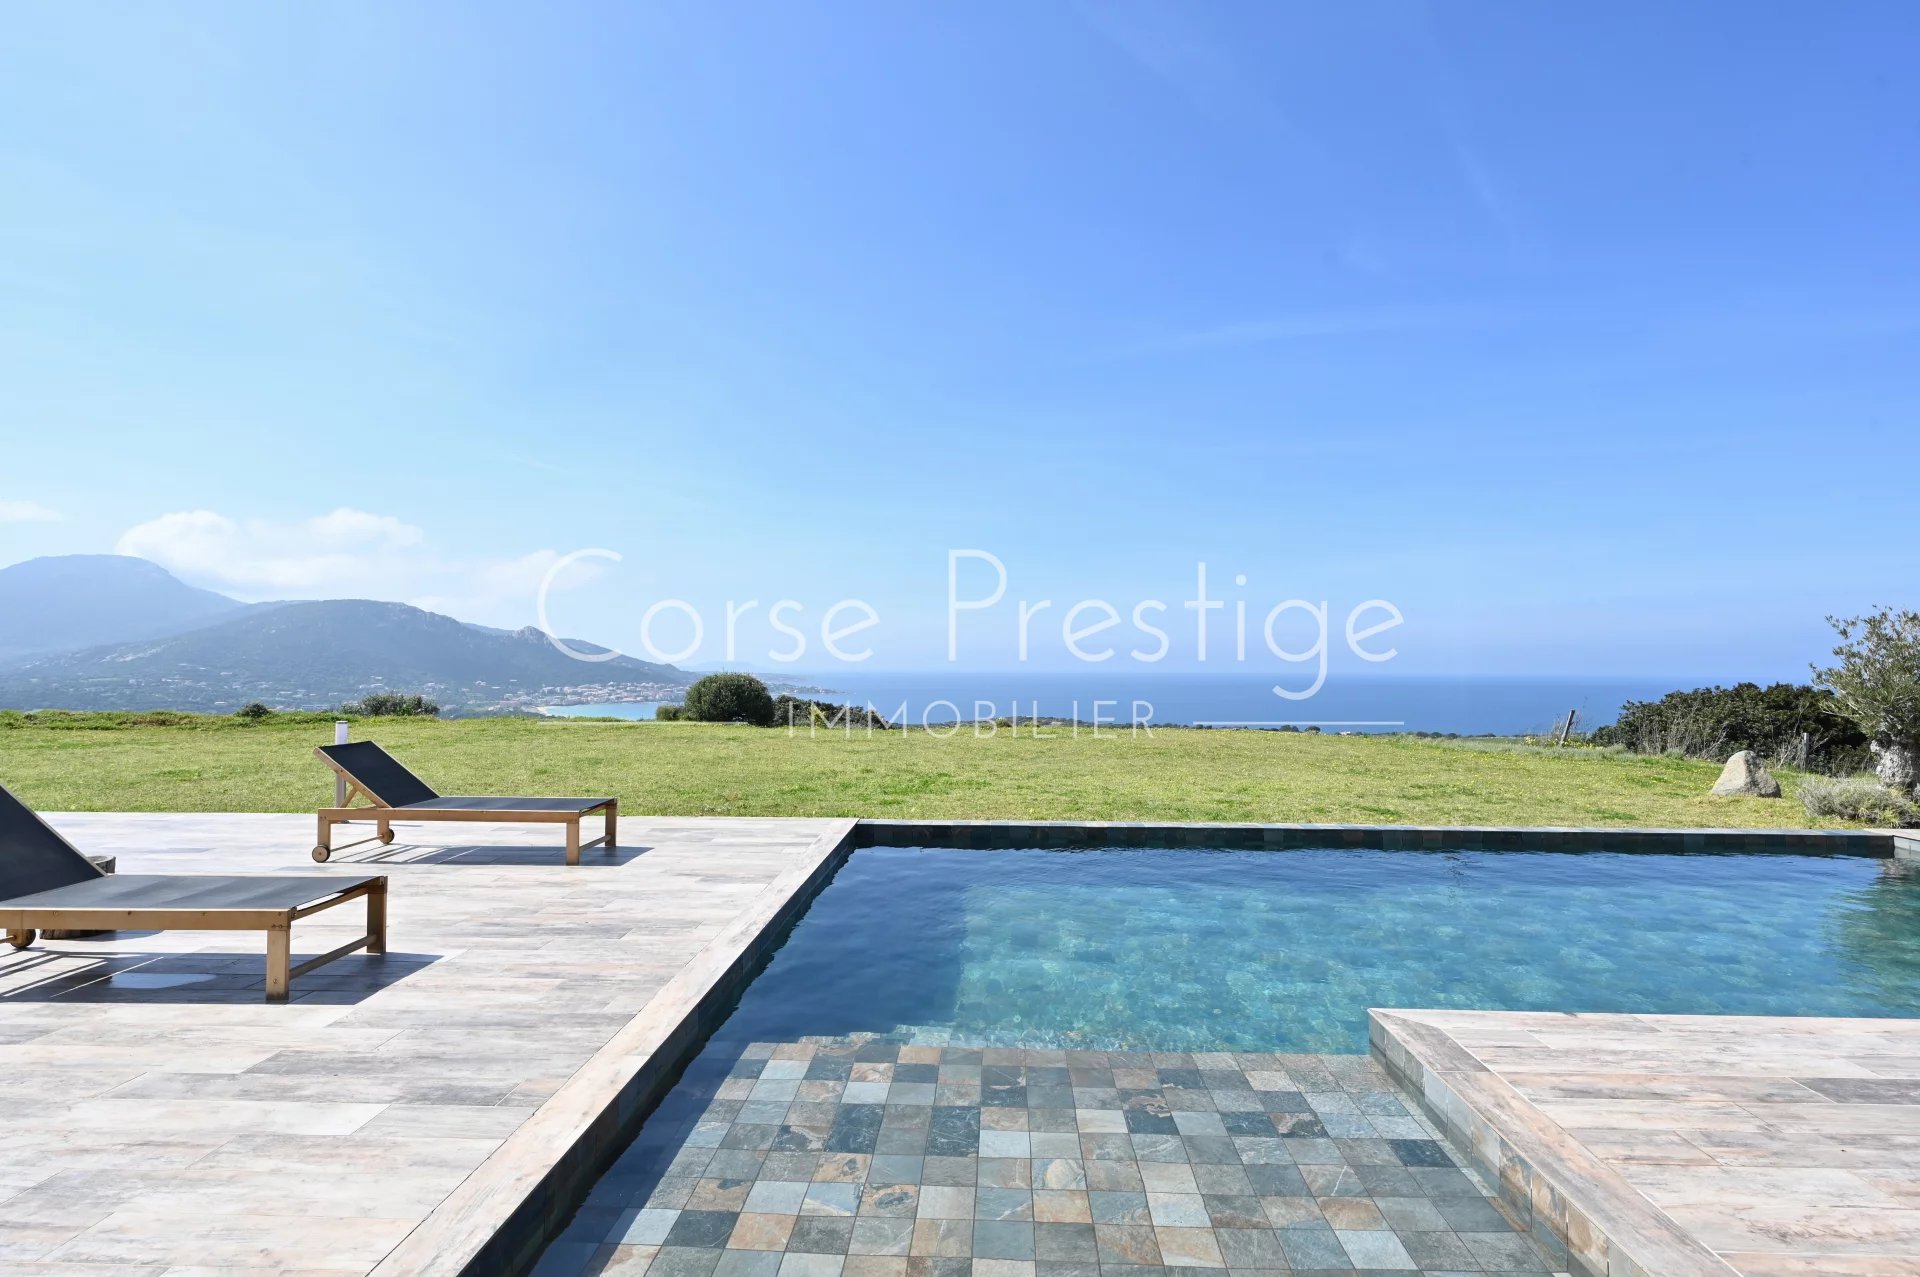 contemporary architect villa for sale in corsica - breathtaking sea views - corbara, north corsica image2